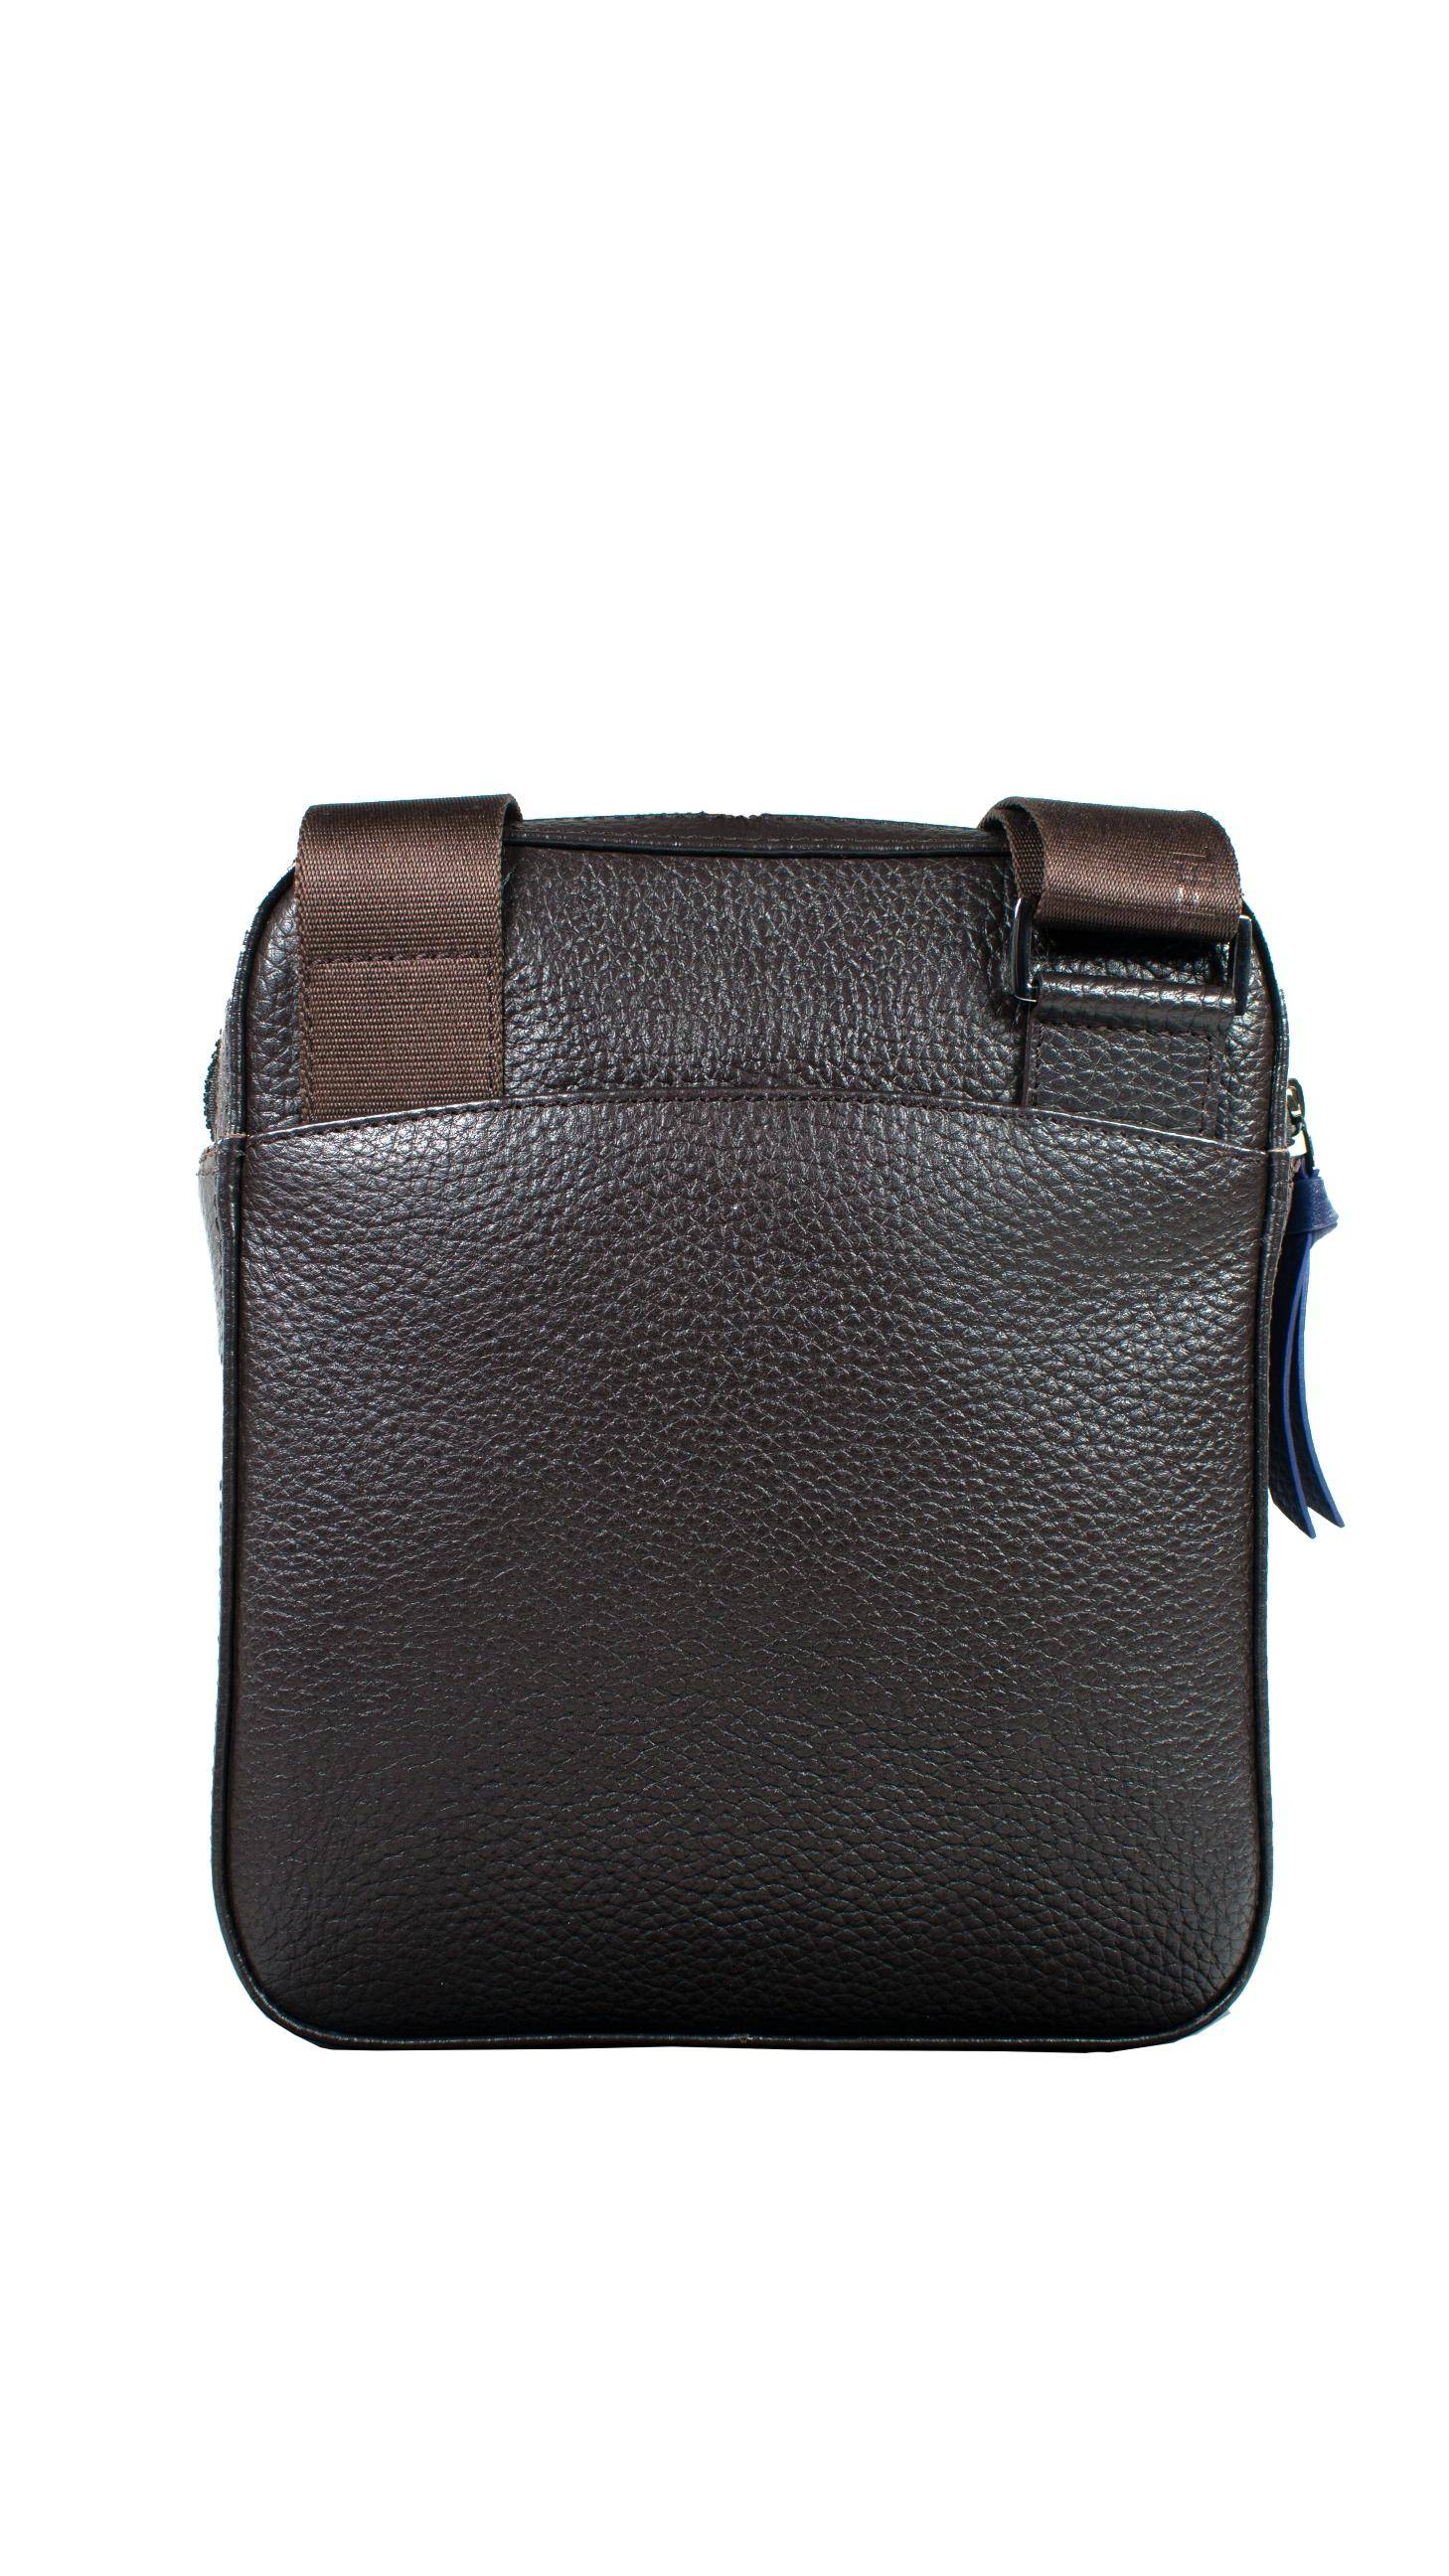 Мужская сумка кросс-боди Braun Buffel, коричневая, цвет коричневый, размер ONE SIZE - фото 2